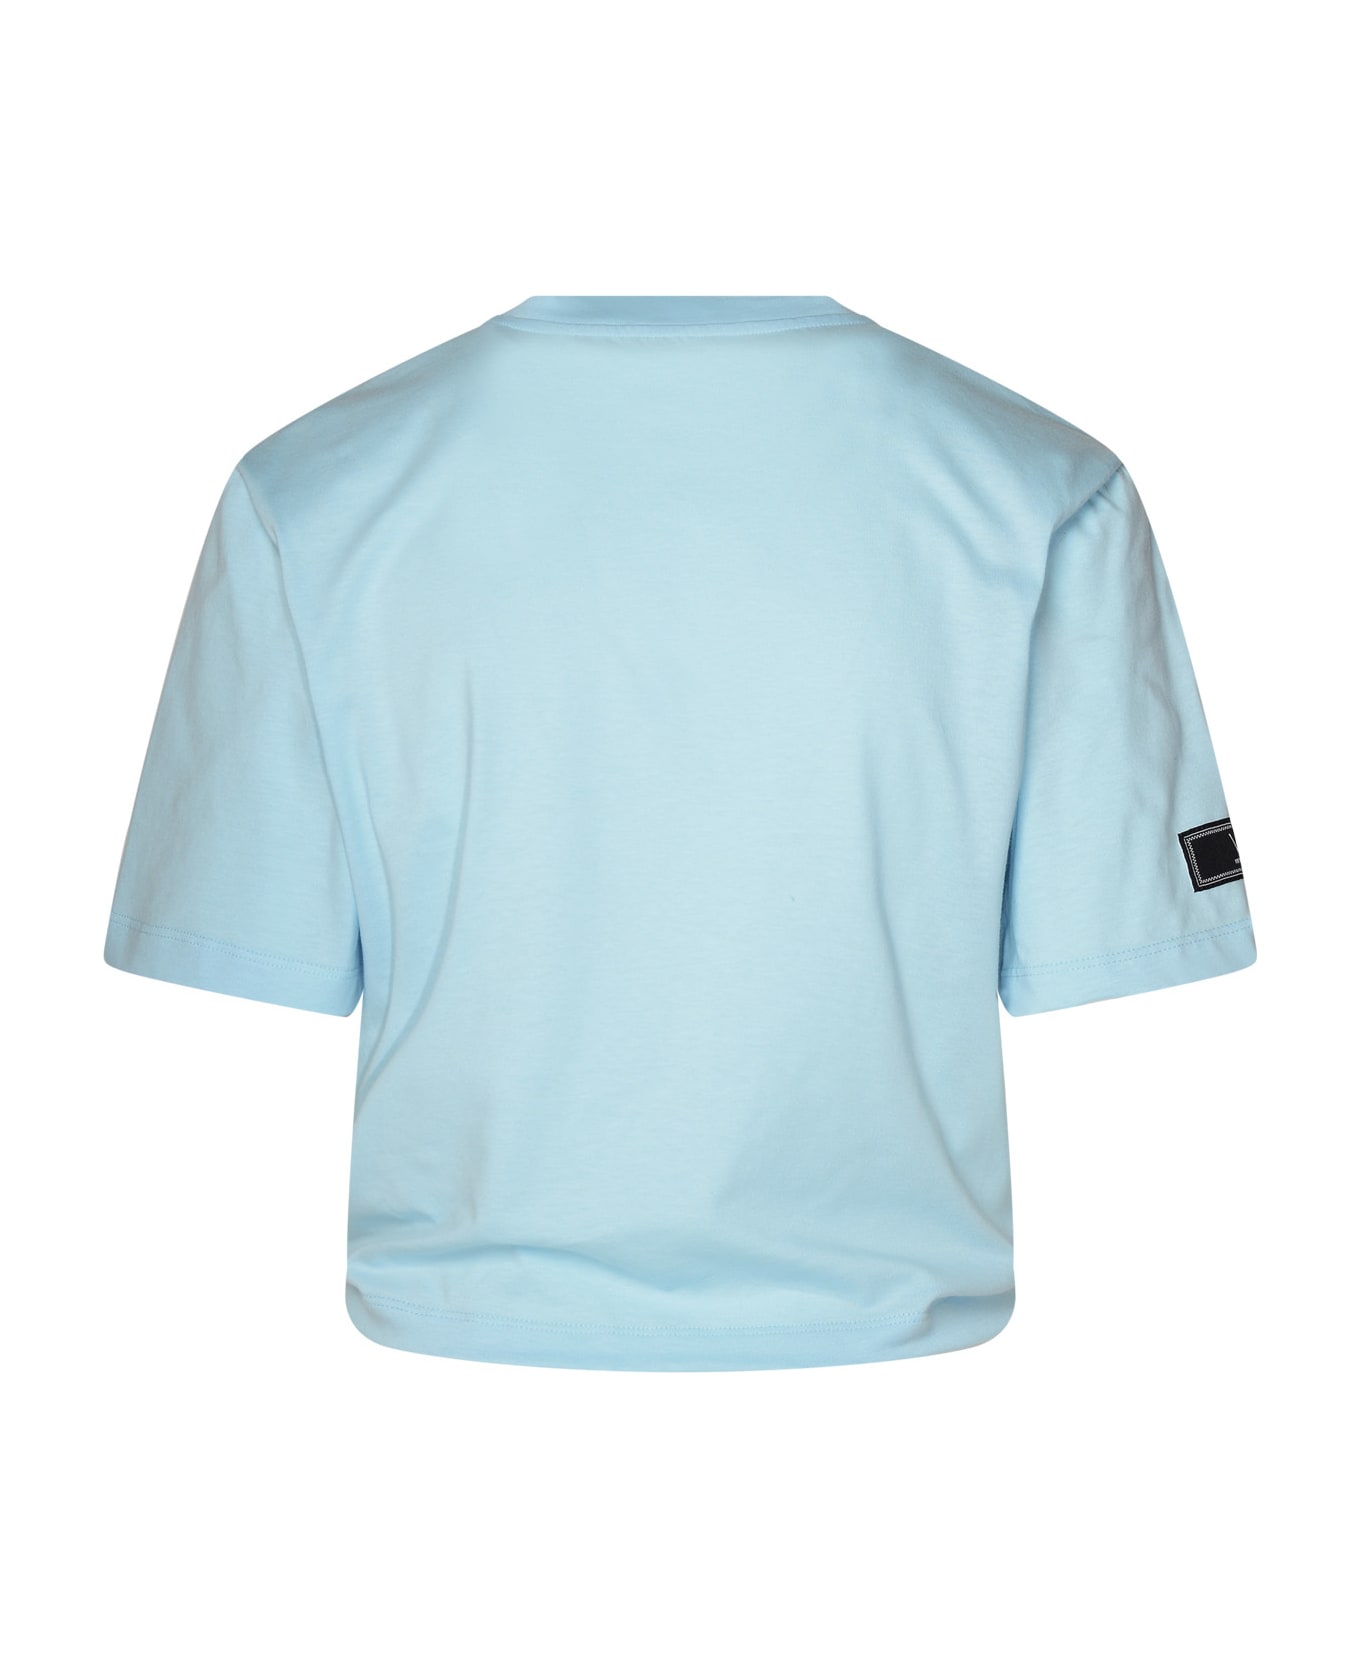 Versace Light Blue Cotton T-shirt - Light Blue